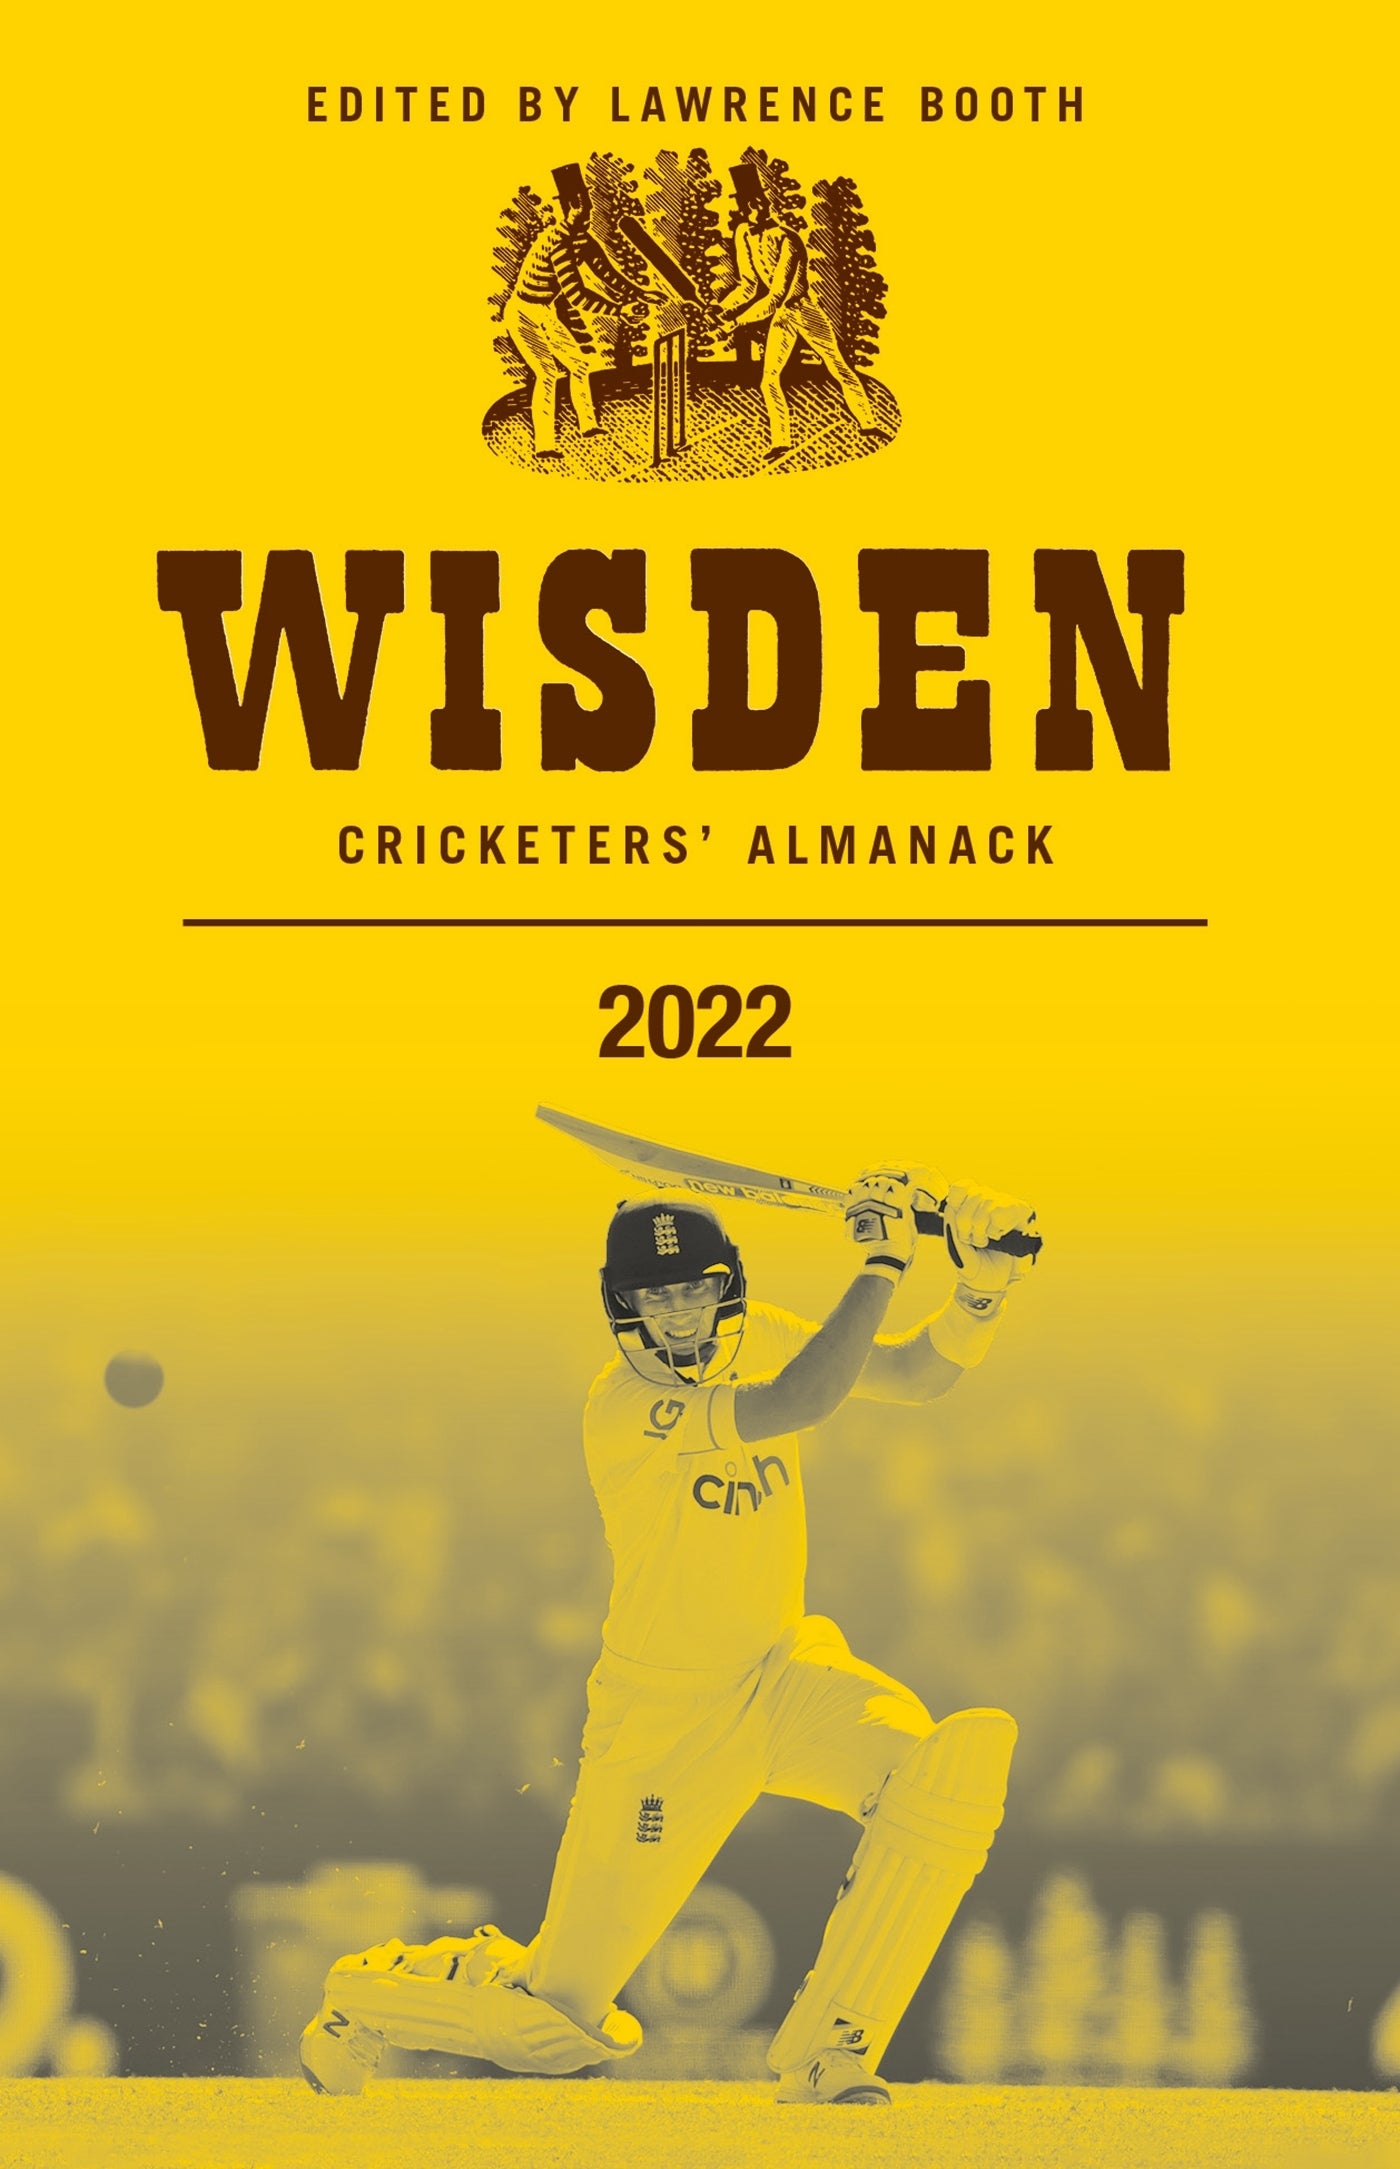 Wisden Cricketers’ Almanack 2022 (Wisden/Bloomsbury Publishing)